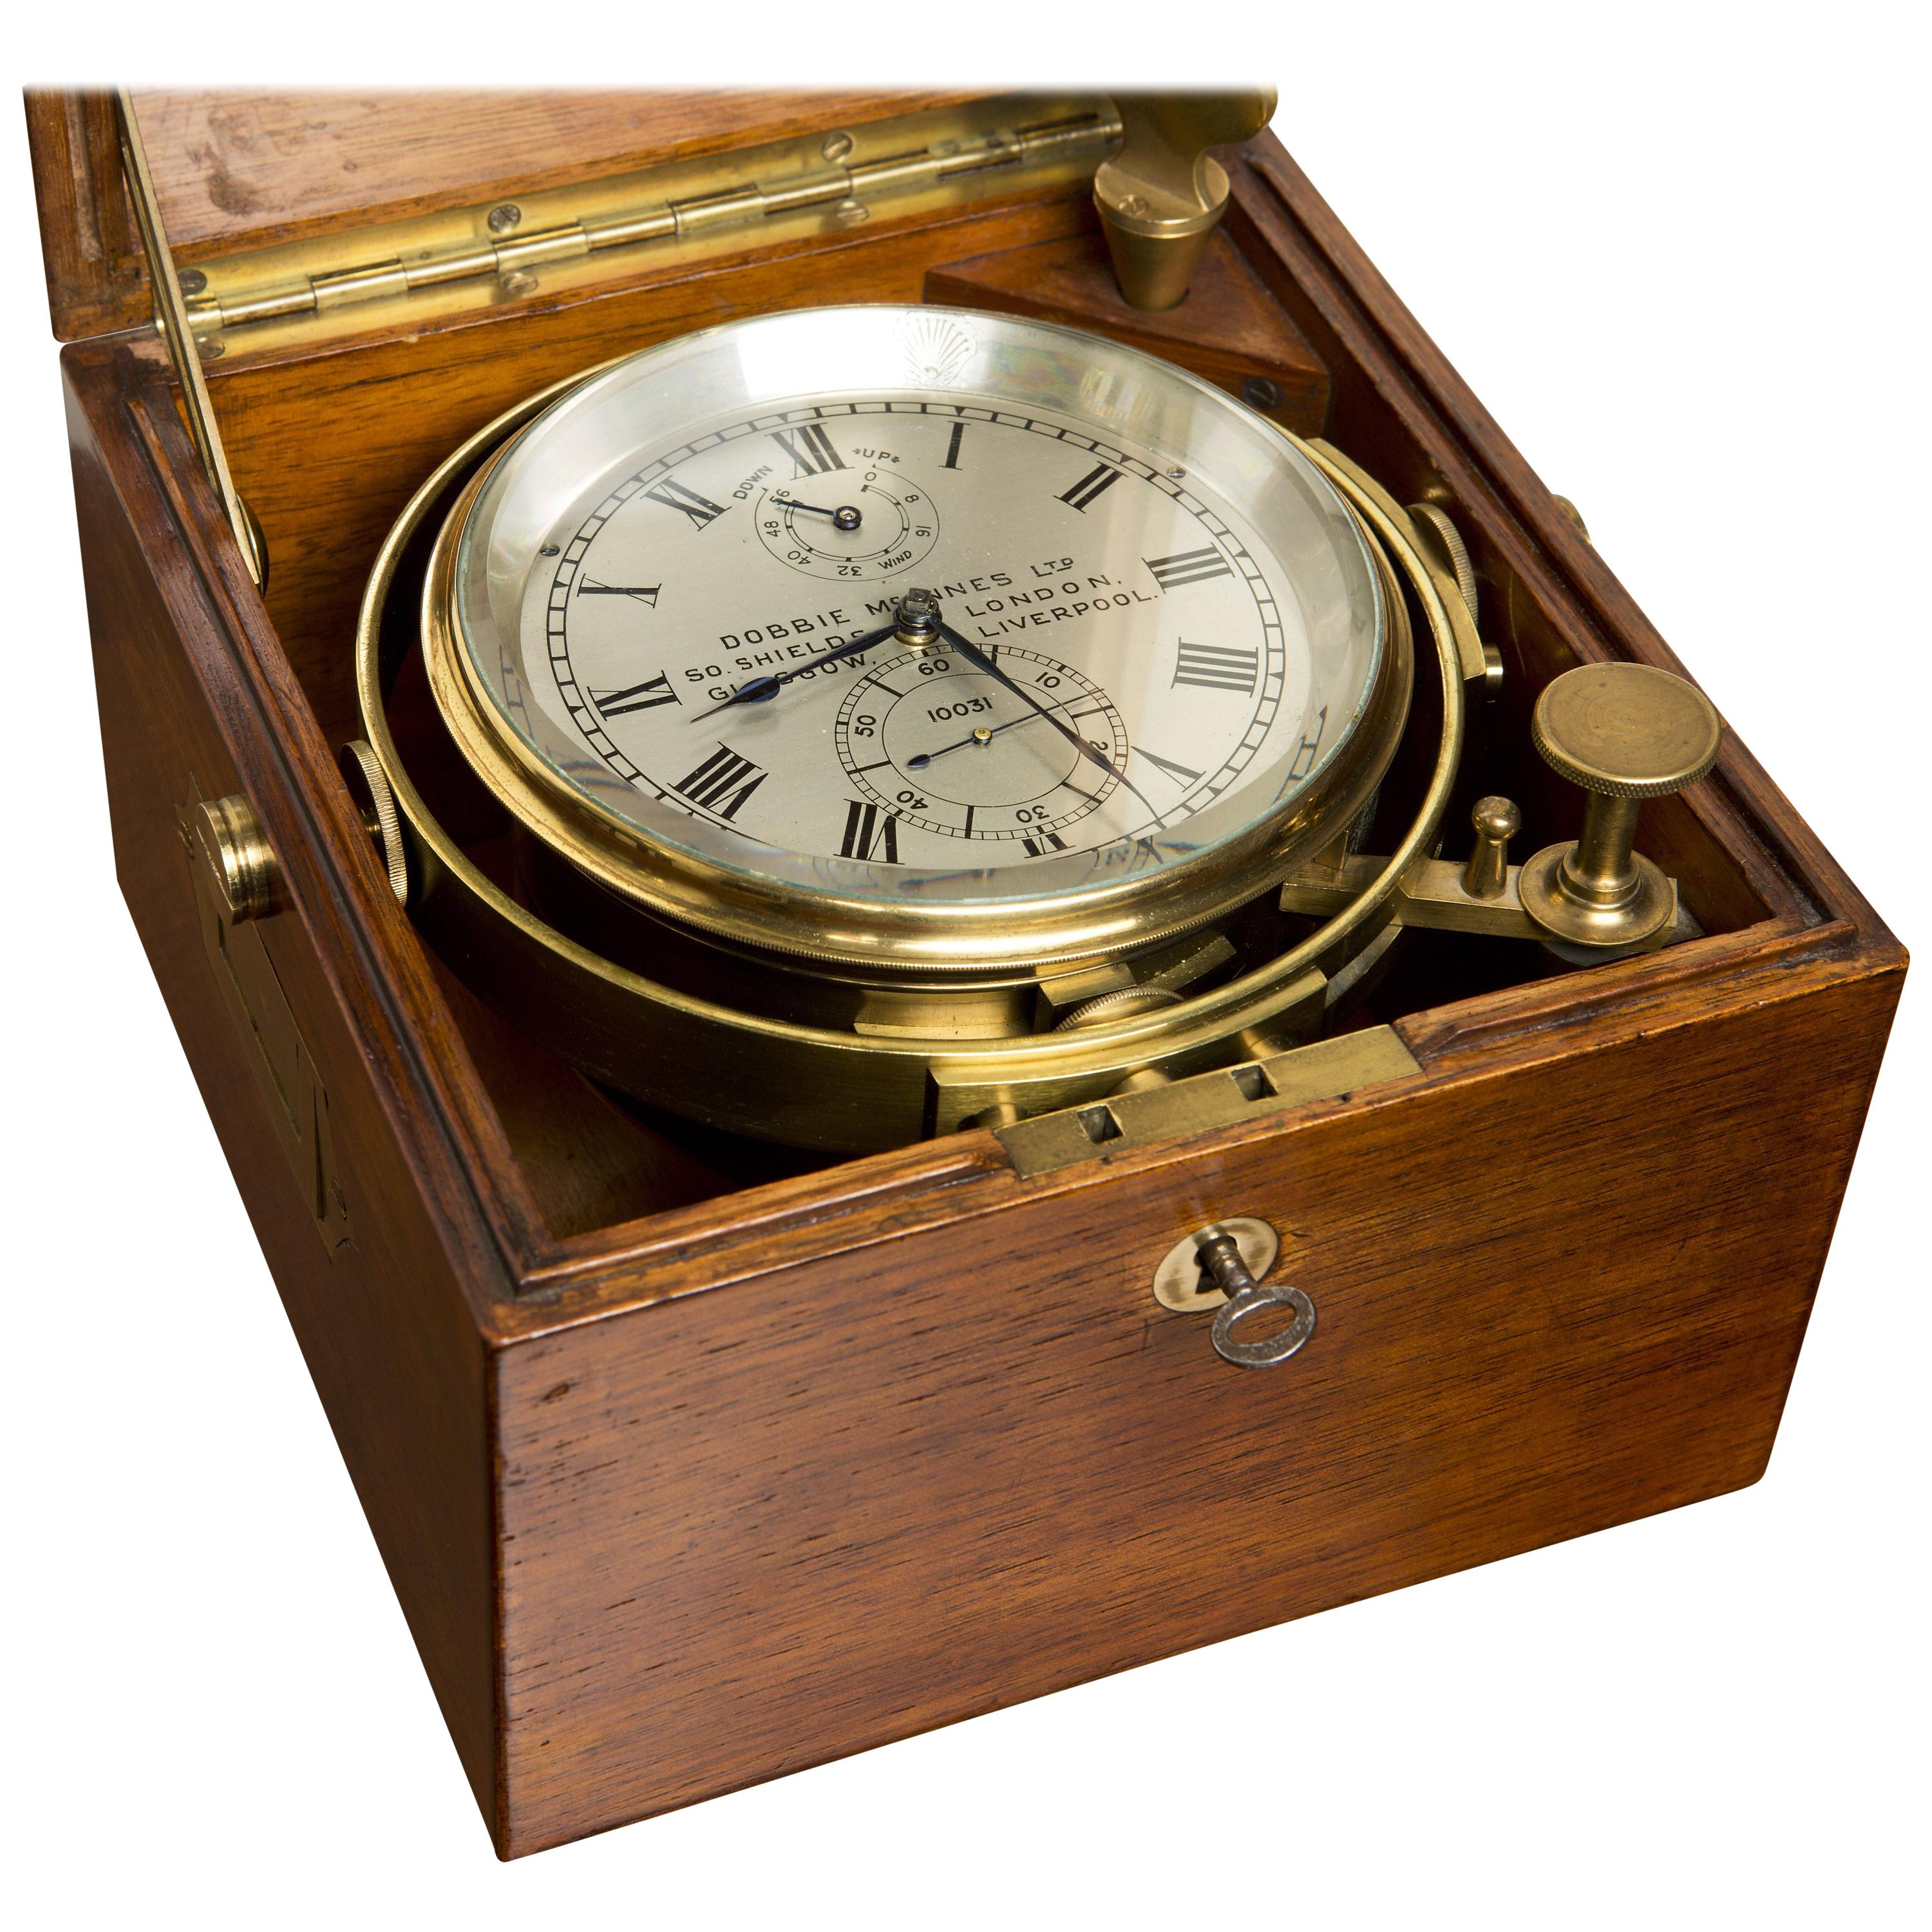 Marine Chronometer by Dobbie McInnes Ltd 10031, Glasgow